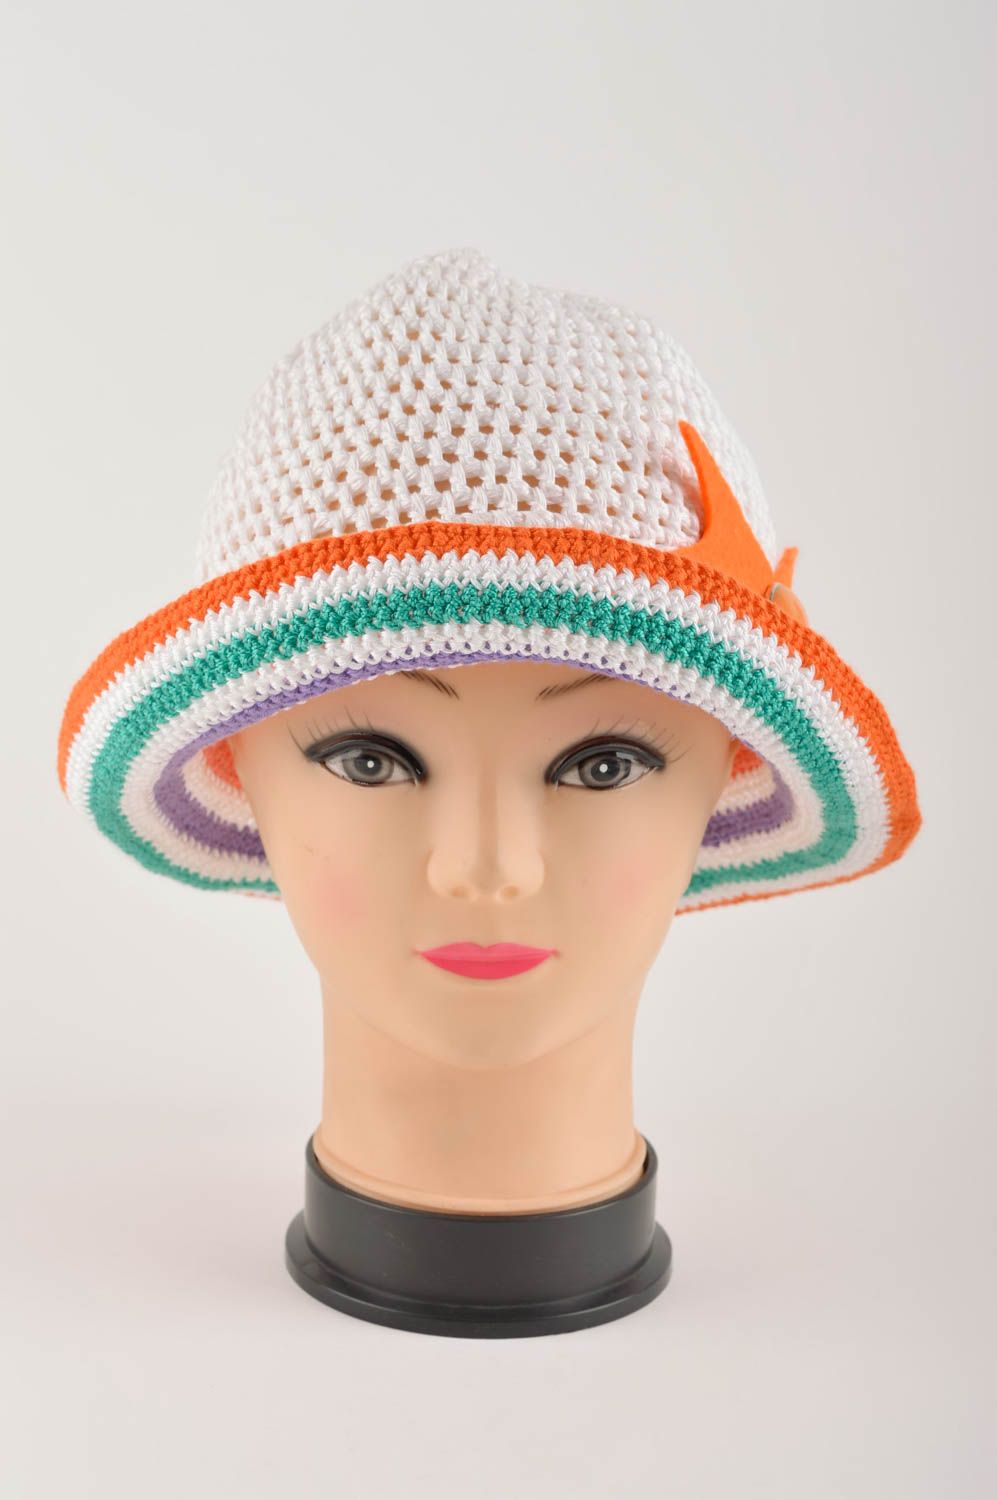 Handmade hat summer hat gift ideas designer cap summer headwear designer hat photo 2